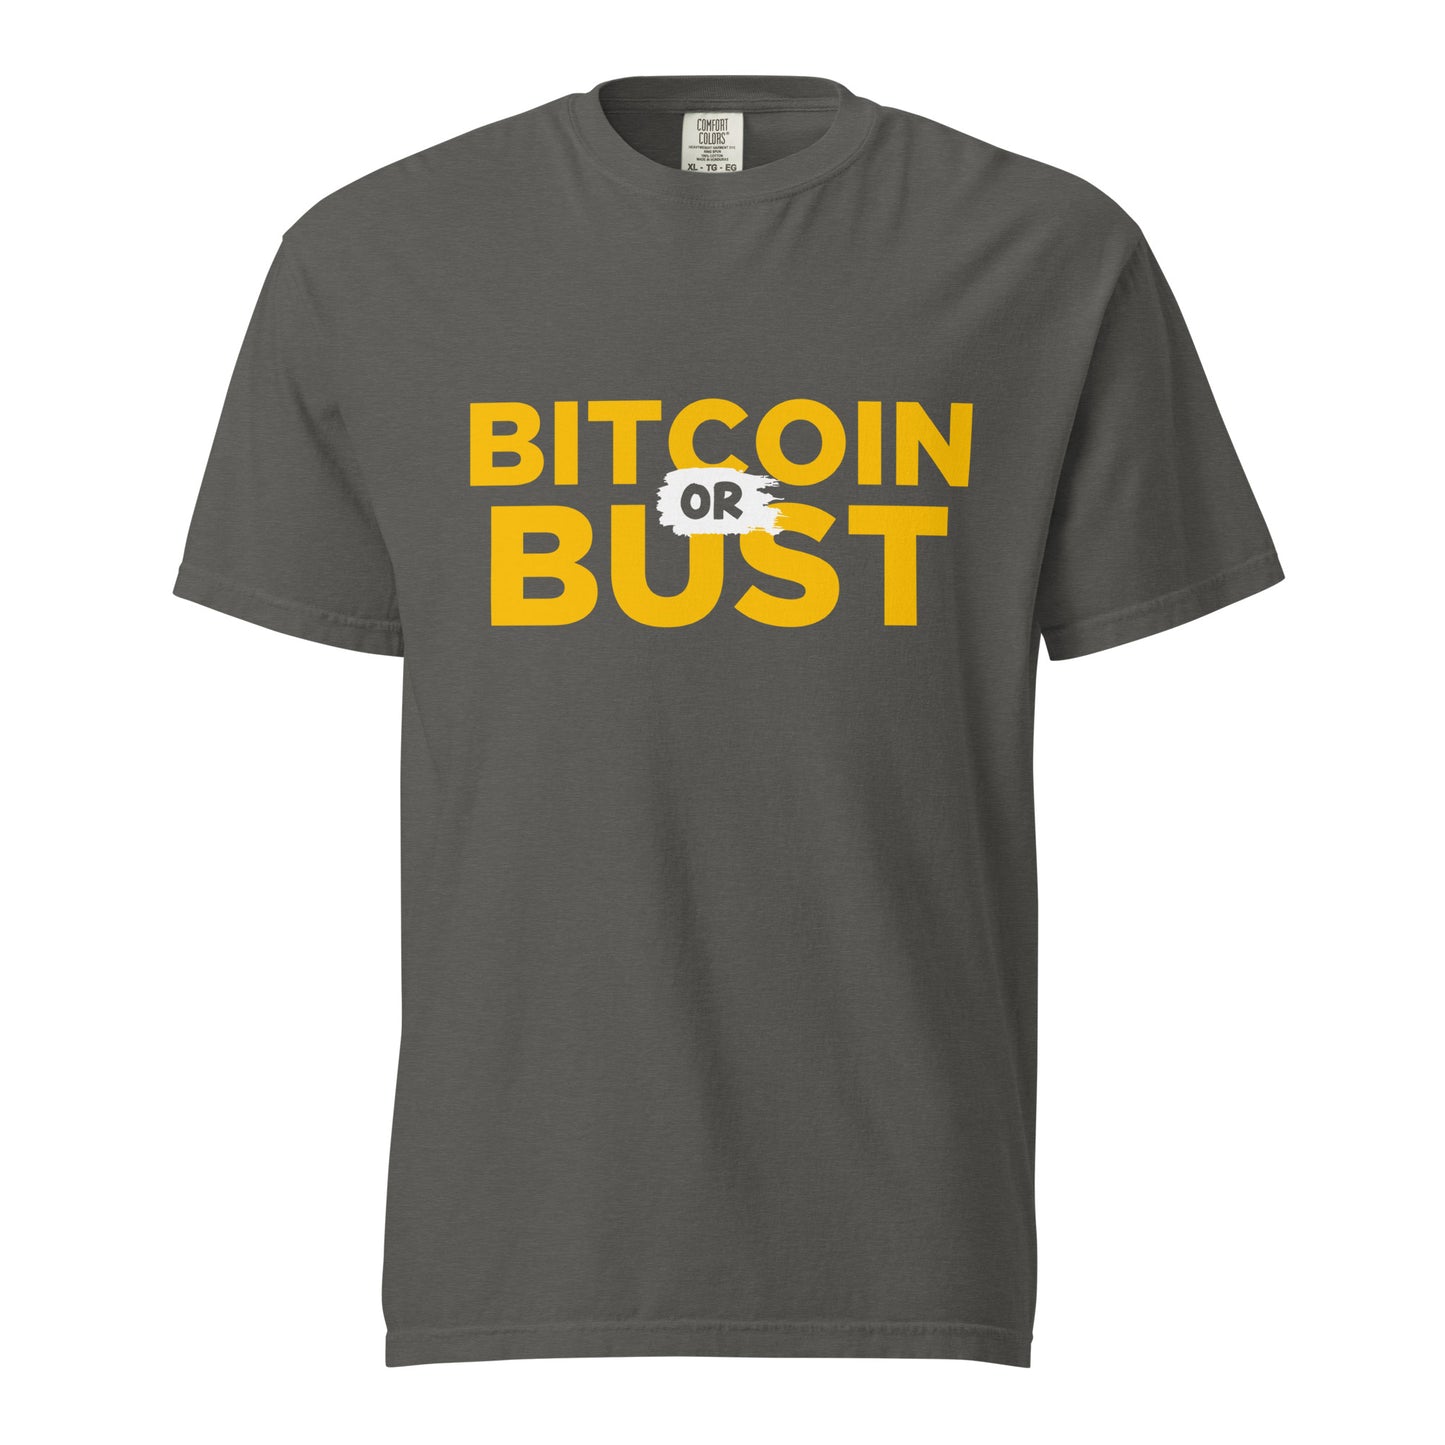 Bitcoin or Bust heavyweight t-shirt